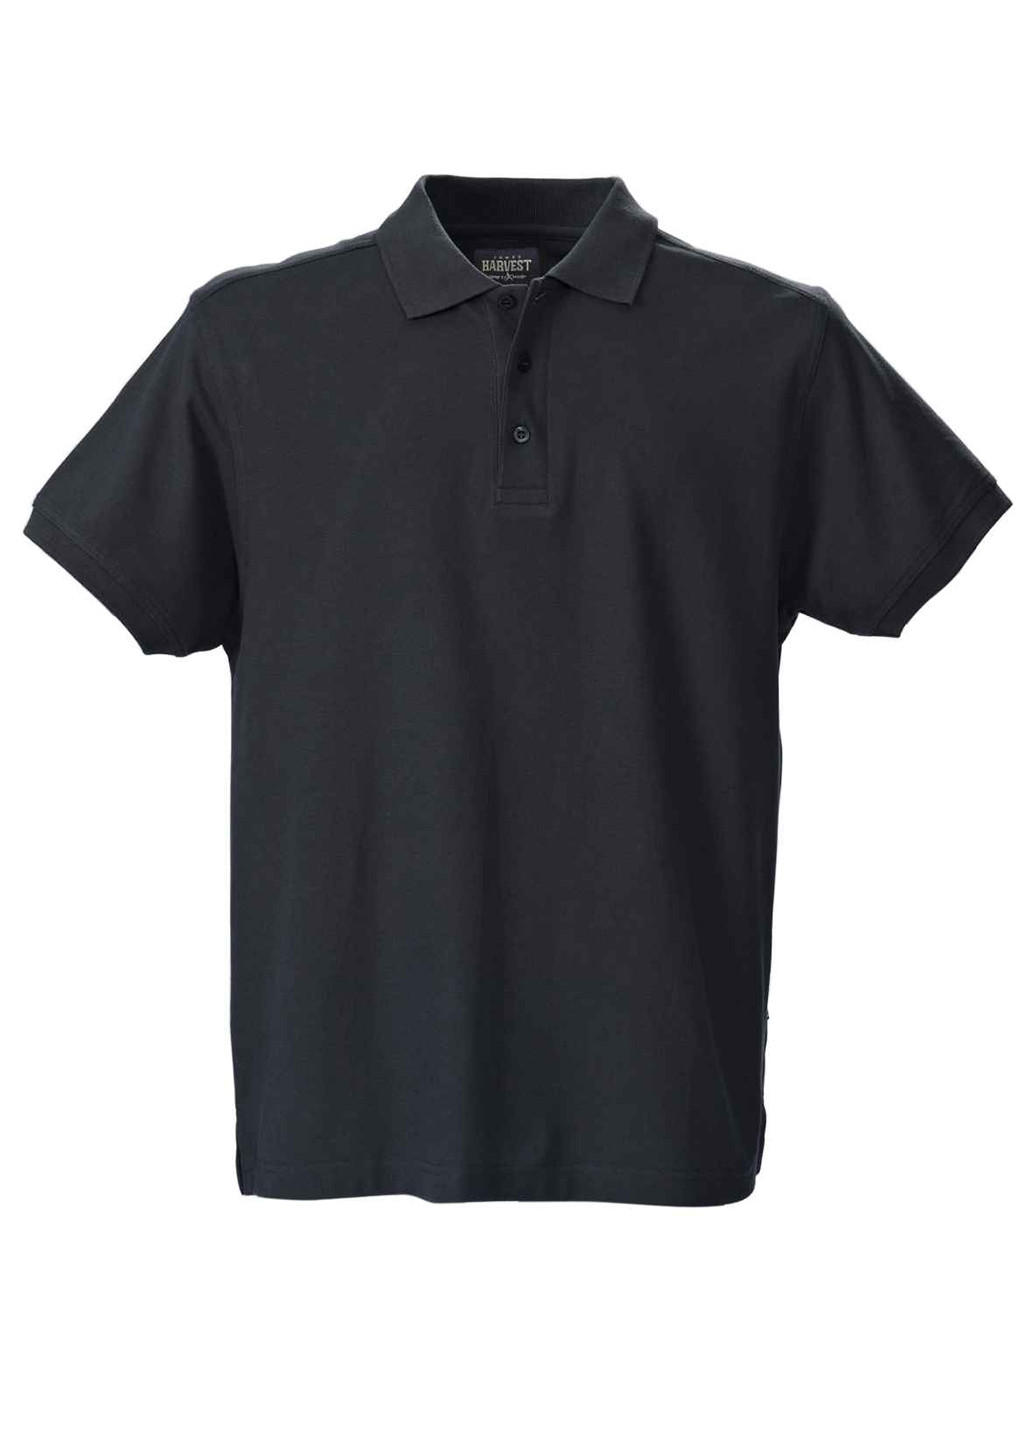 Черная футболка-поло для мужчин James Harvest однотонная